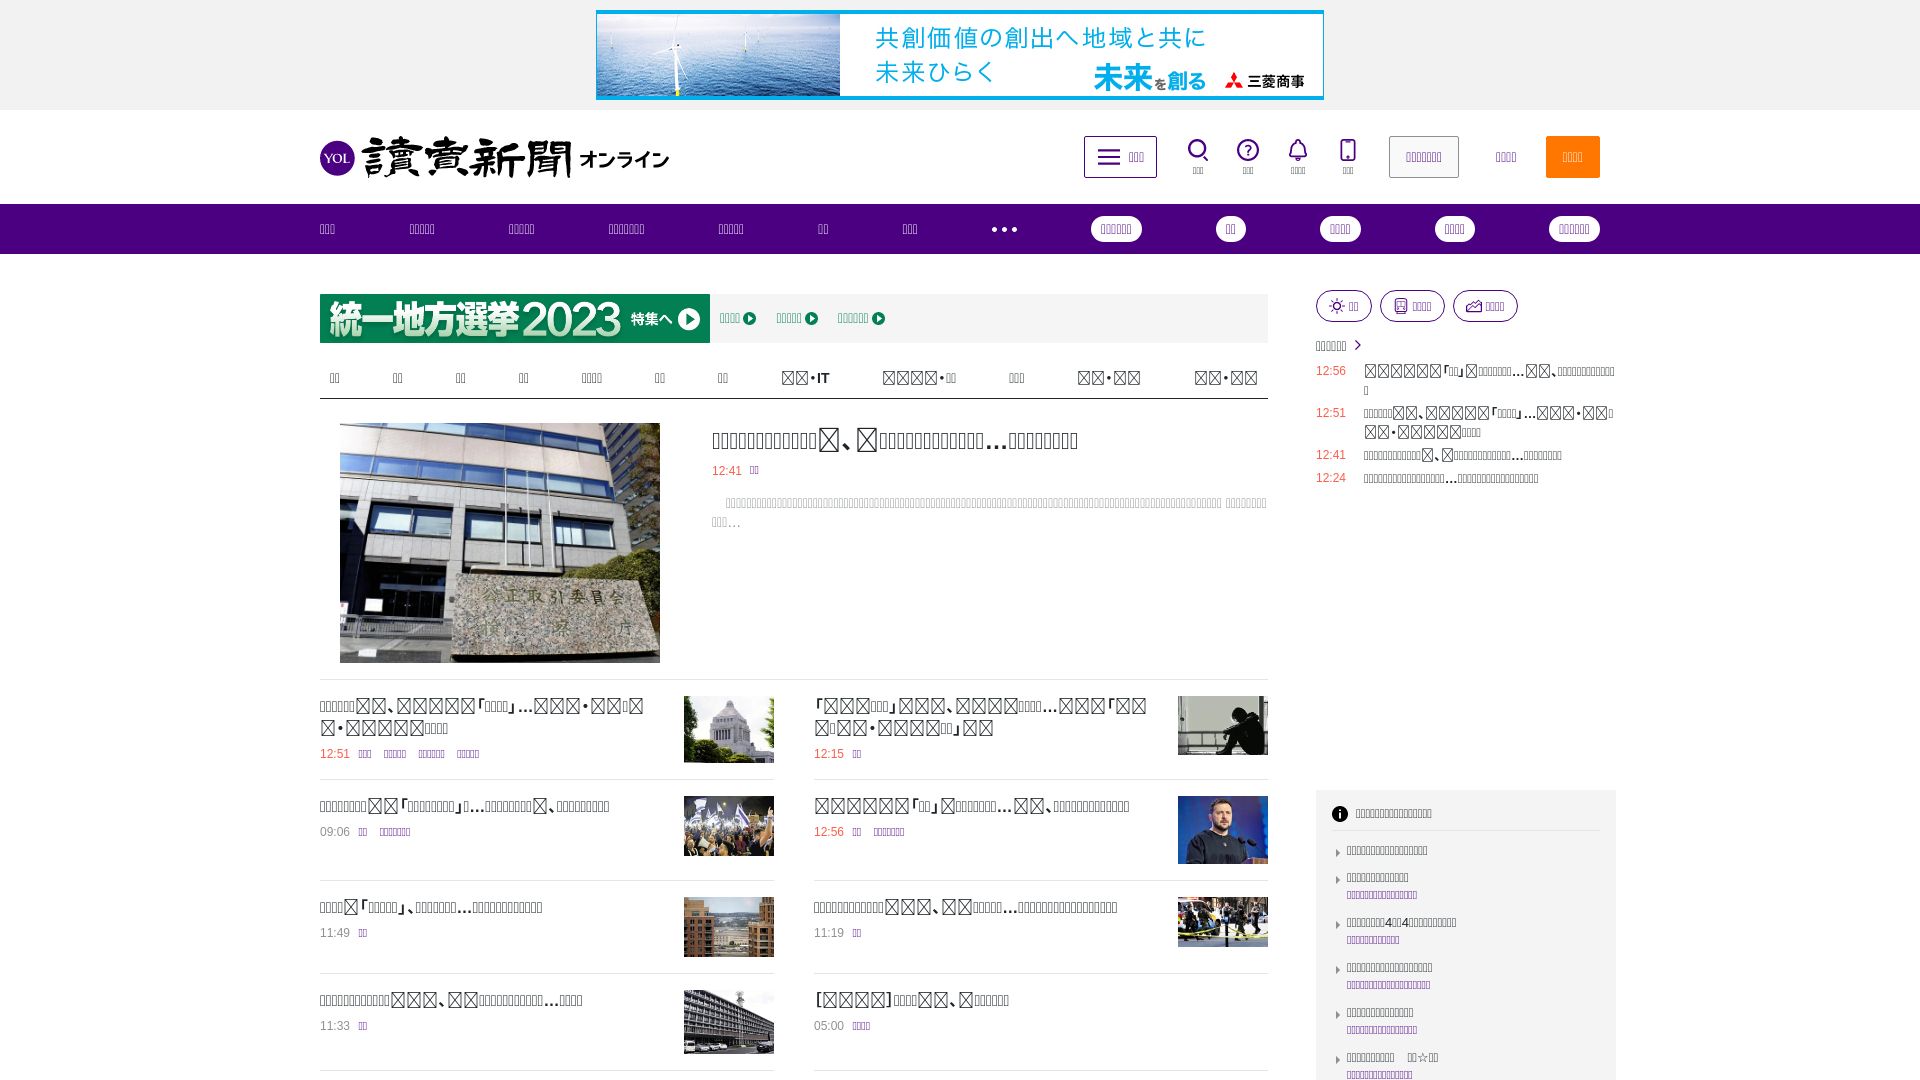 Webseitenstatus yomiuri.co.jp ist   ONLINE